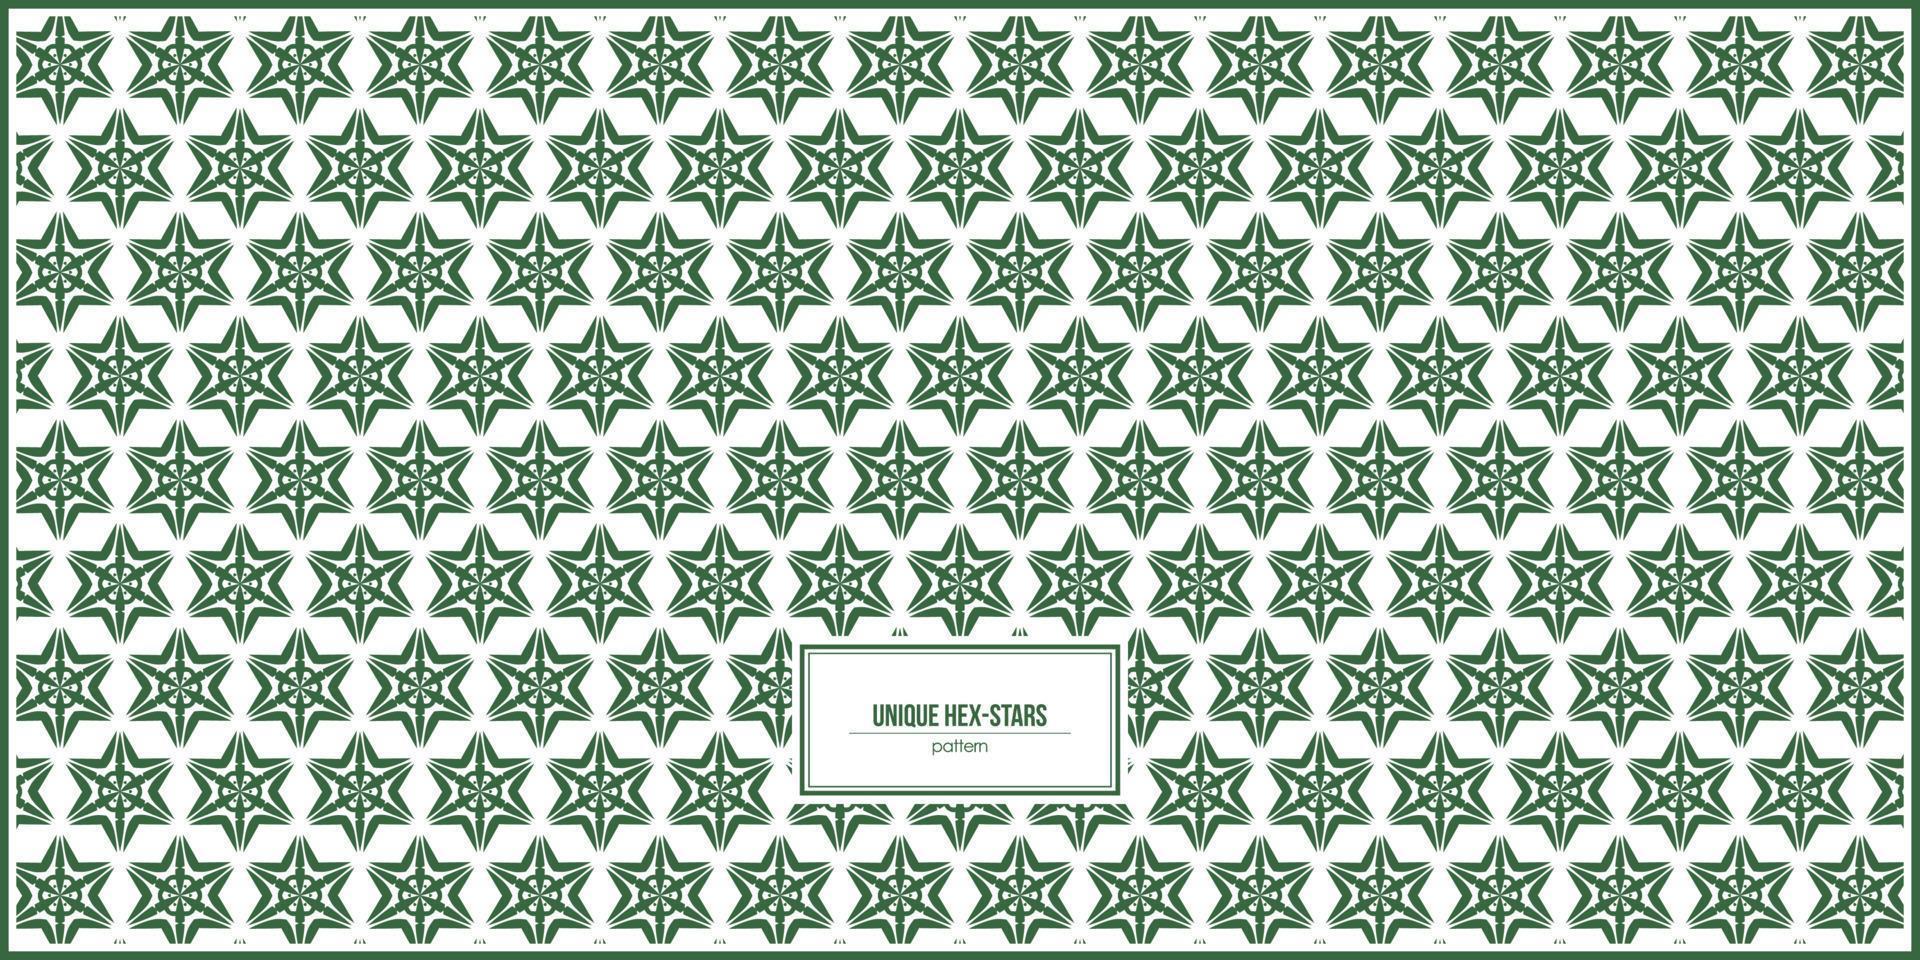 patrón único de estrellas hexagonales para una tarjeta de presentación única vector